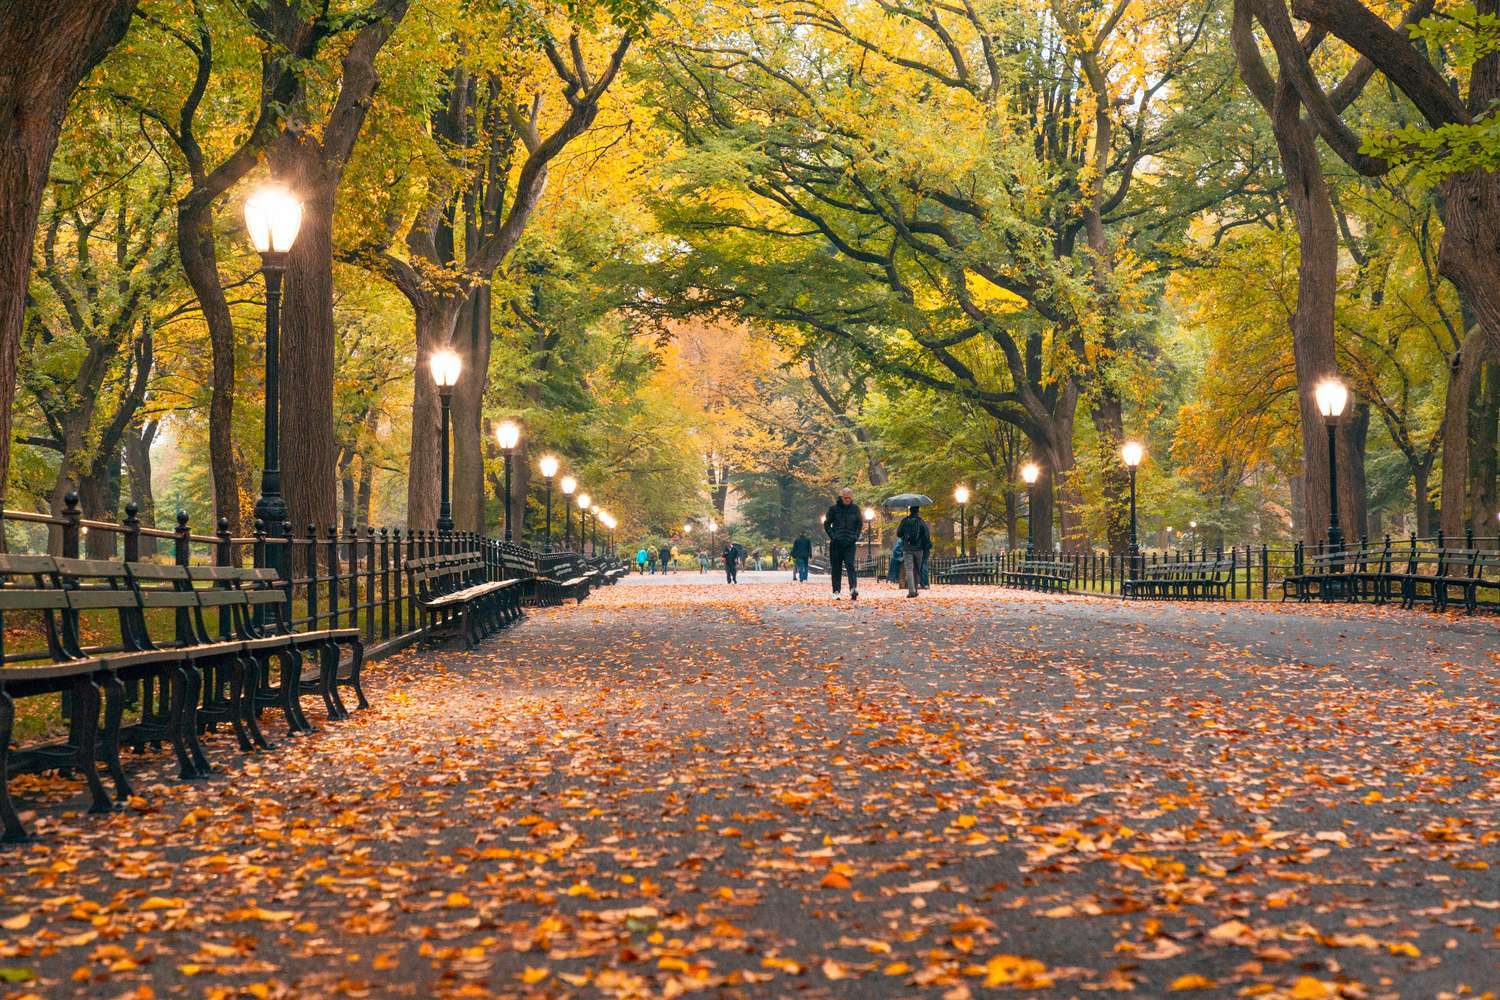 5 Best Walks to Experience Fall Foliage in NY The Marmara Park Avenue